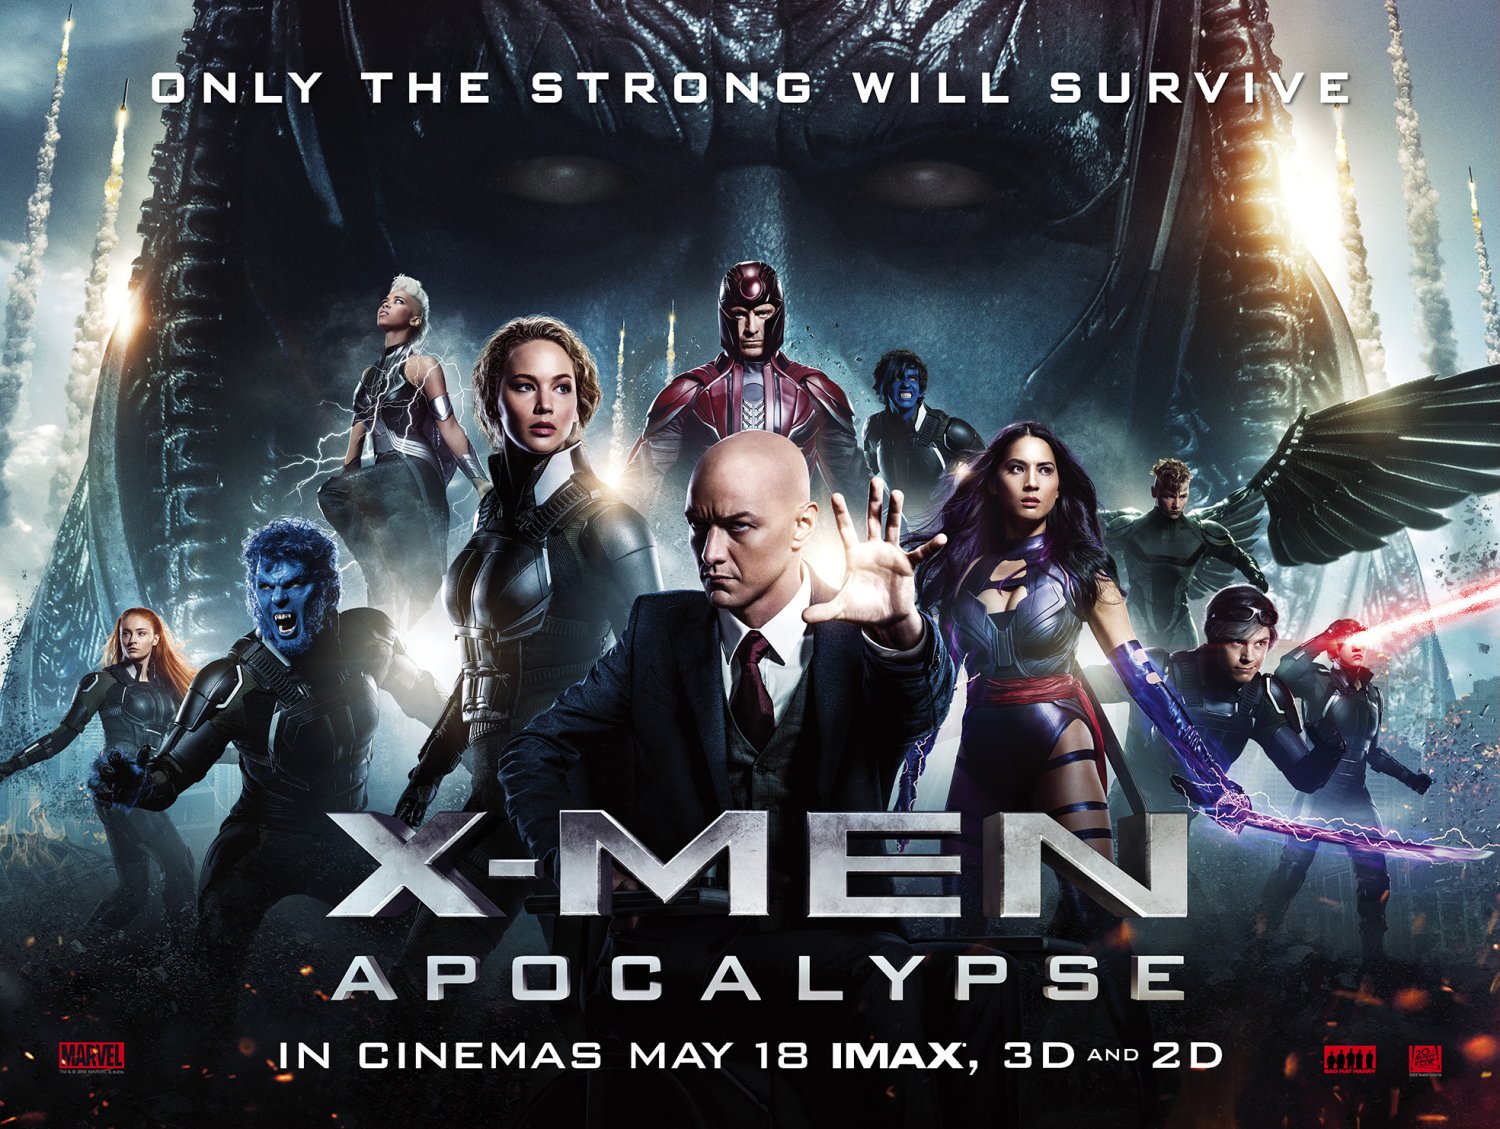 X-Men: Apocalypse Movie Review